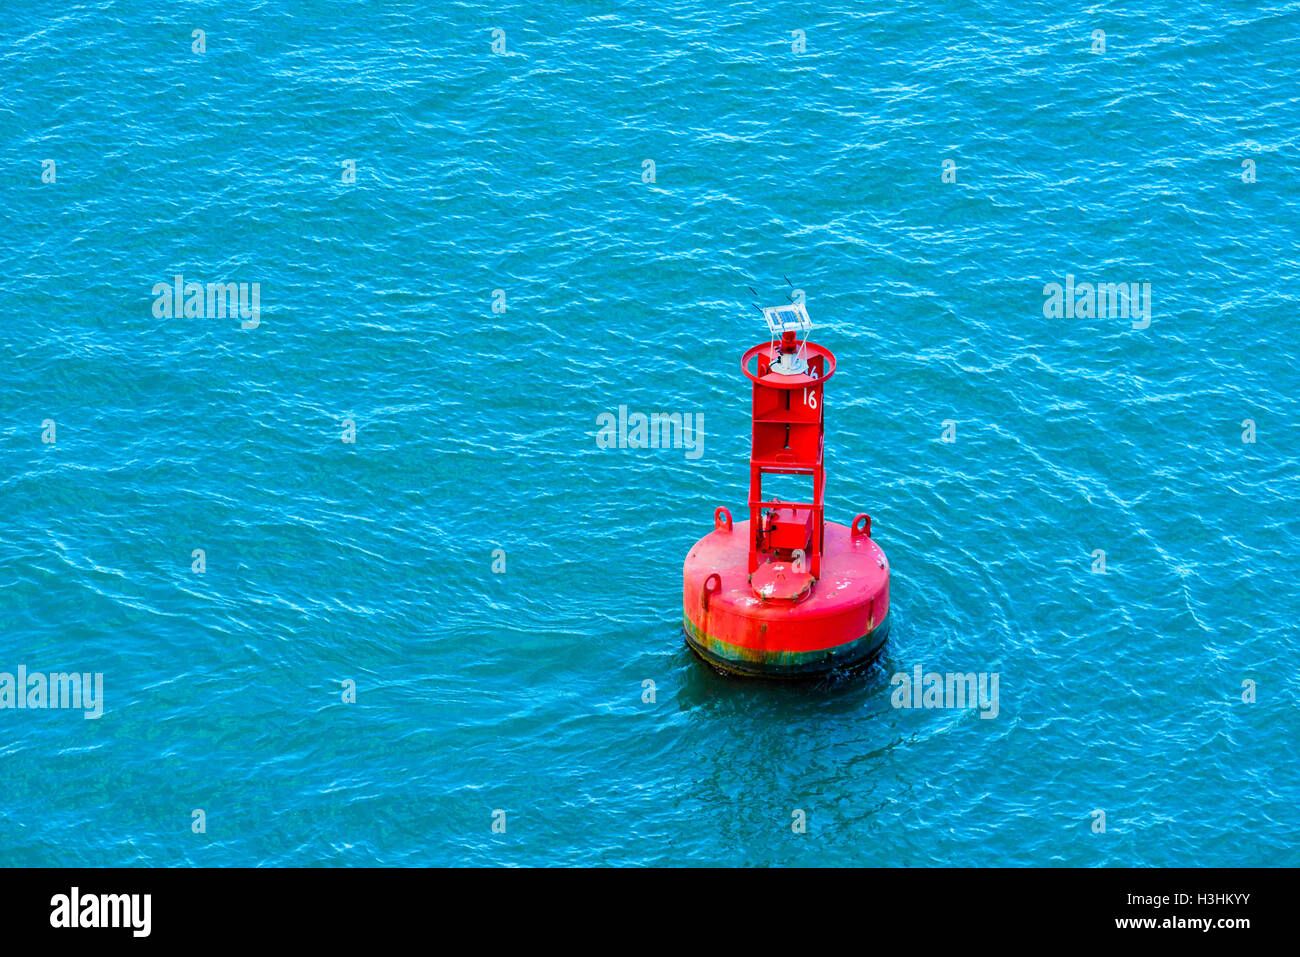 Eine helle rote Boje schwebend in einem blauen Ozean Stockfoto